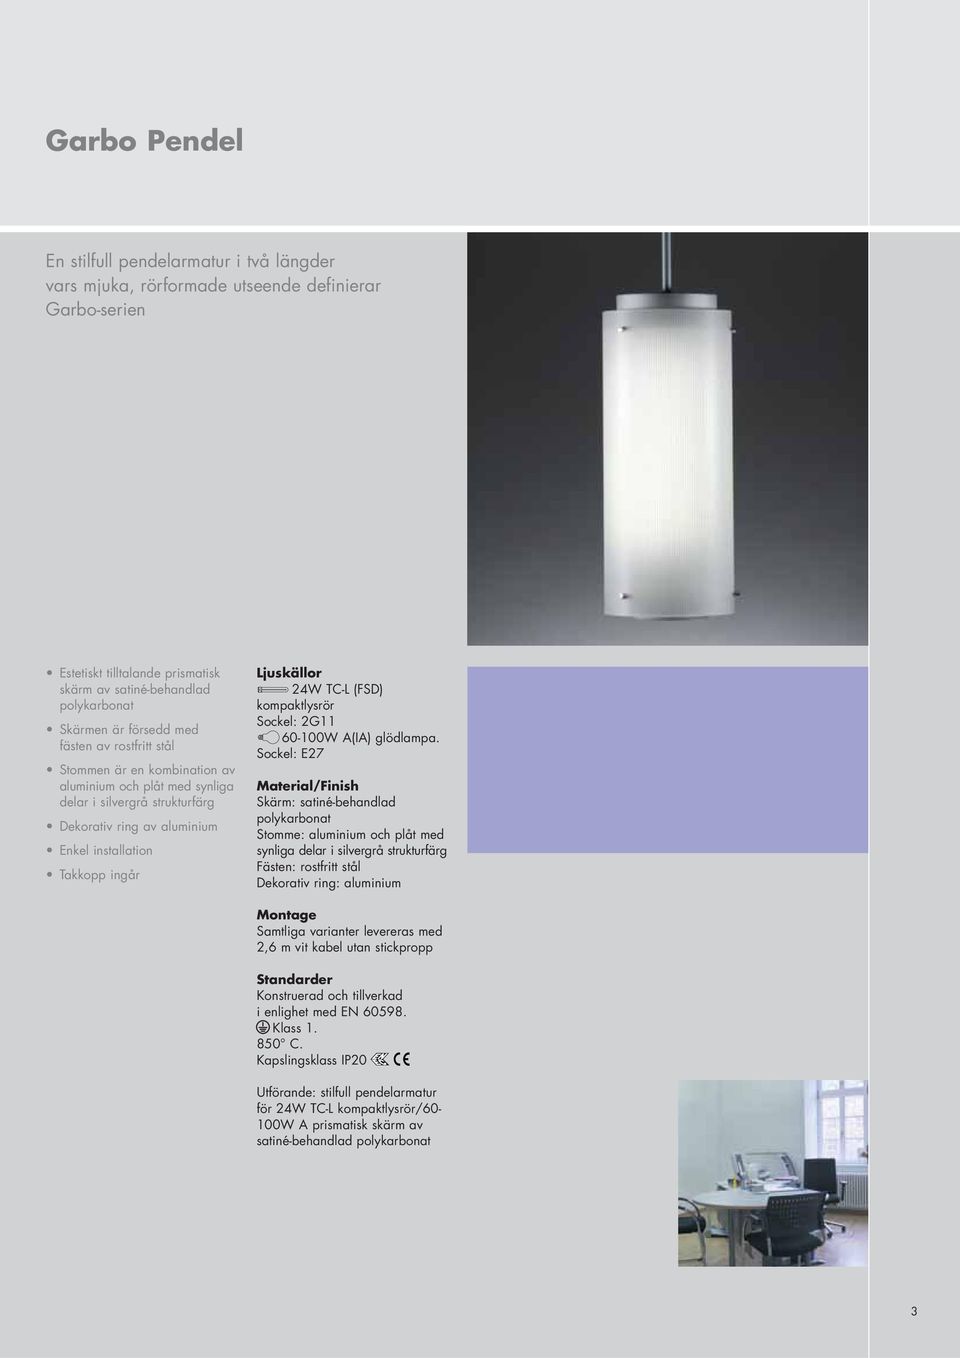 60-100W A(IA) glödlampa.